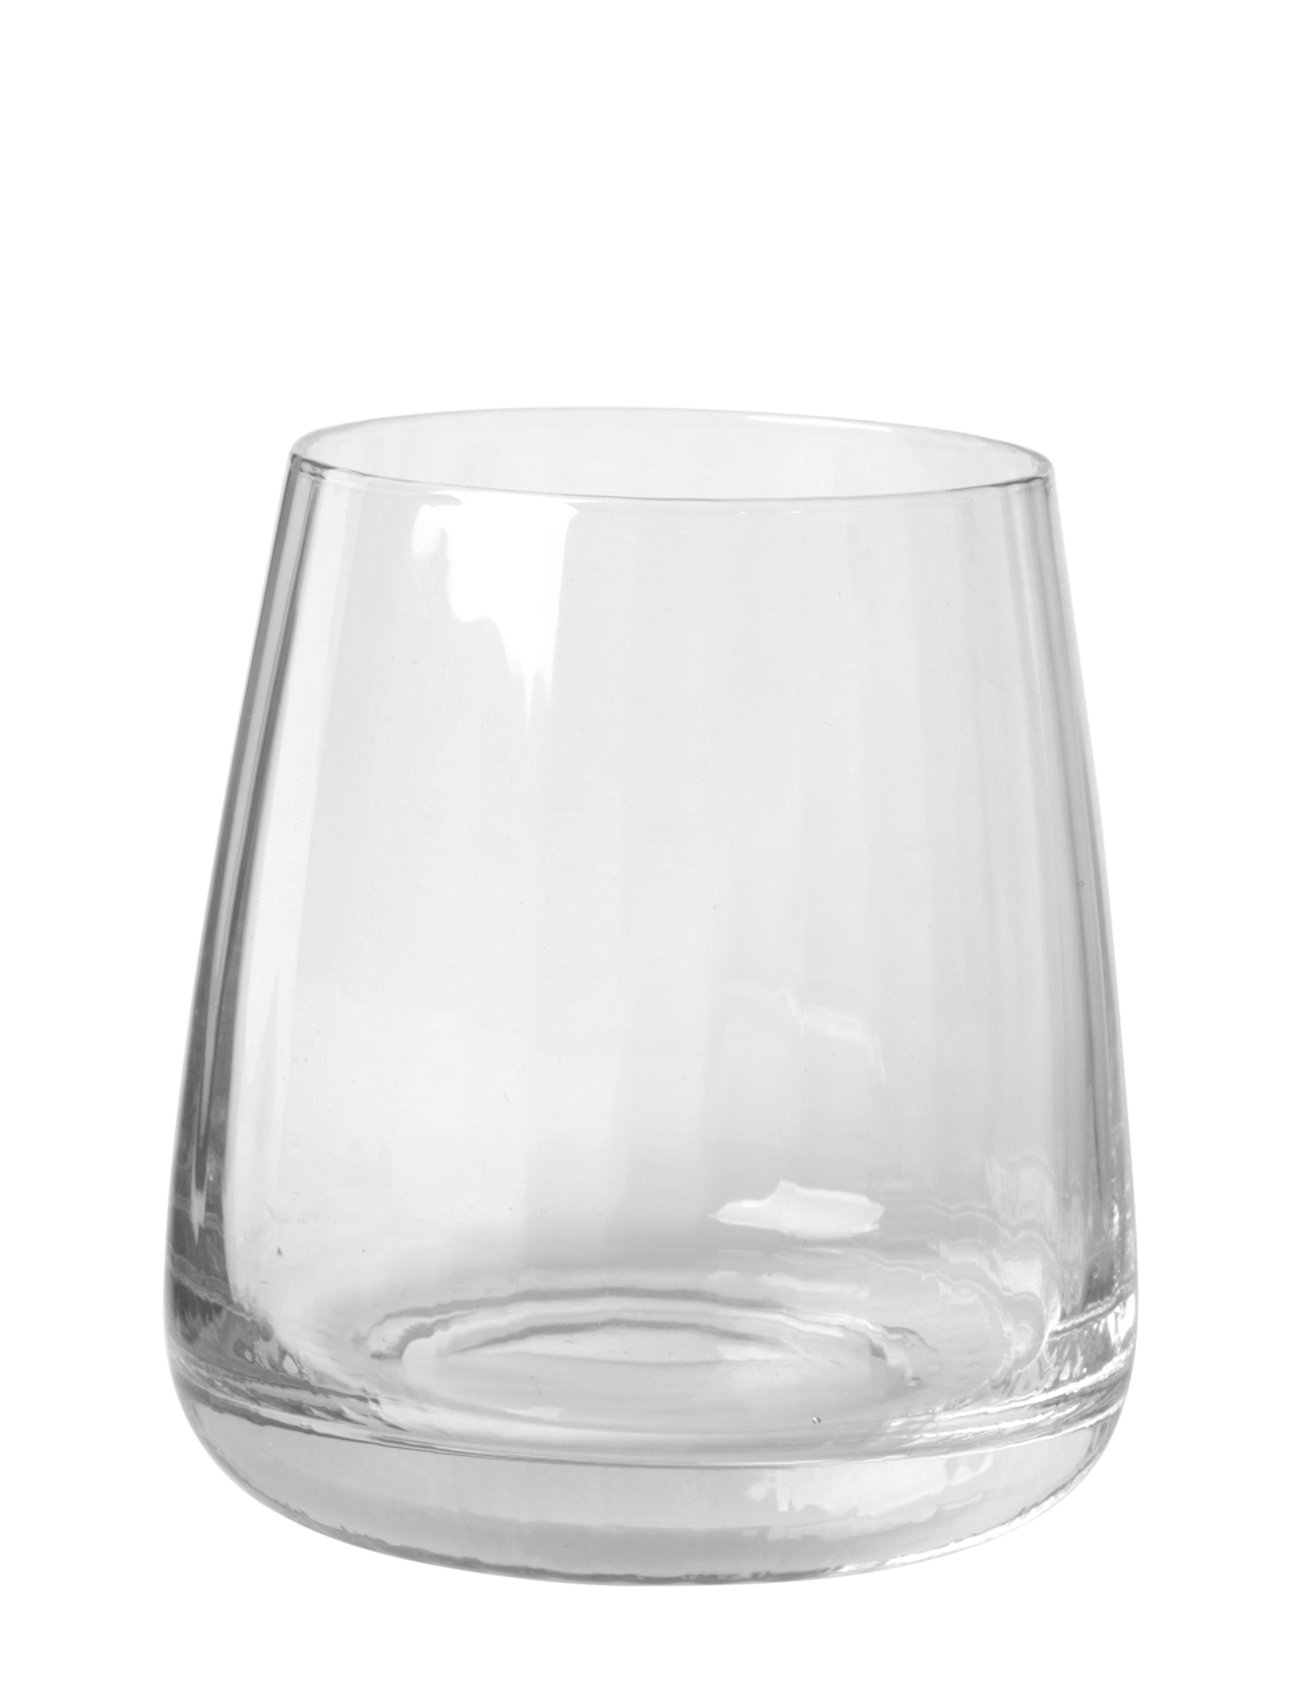 Drikkeglas 'Sandvig' Home Tableware Glass Drinking Glass Nude Broste Copenhagen